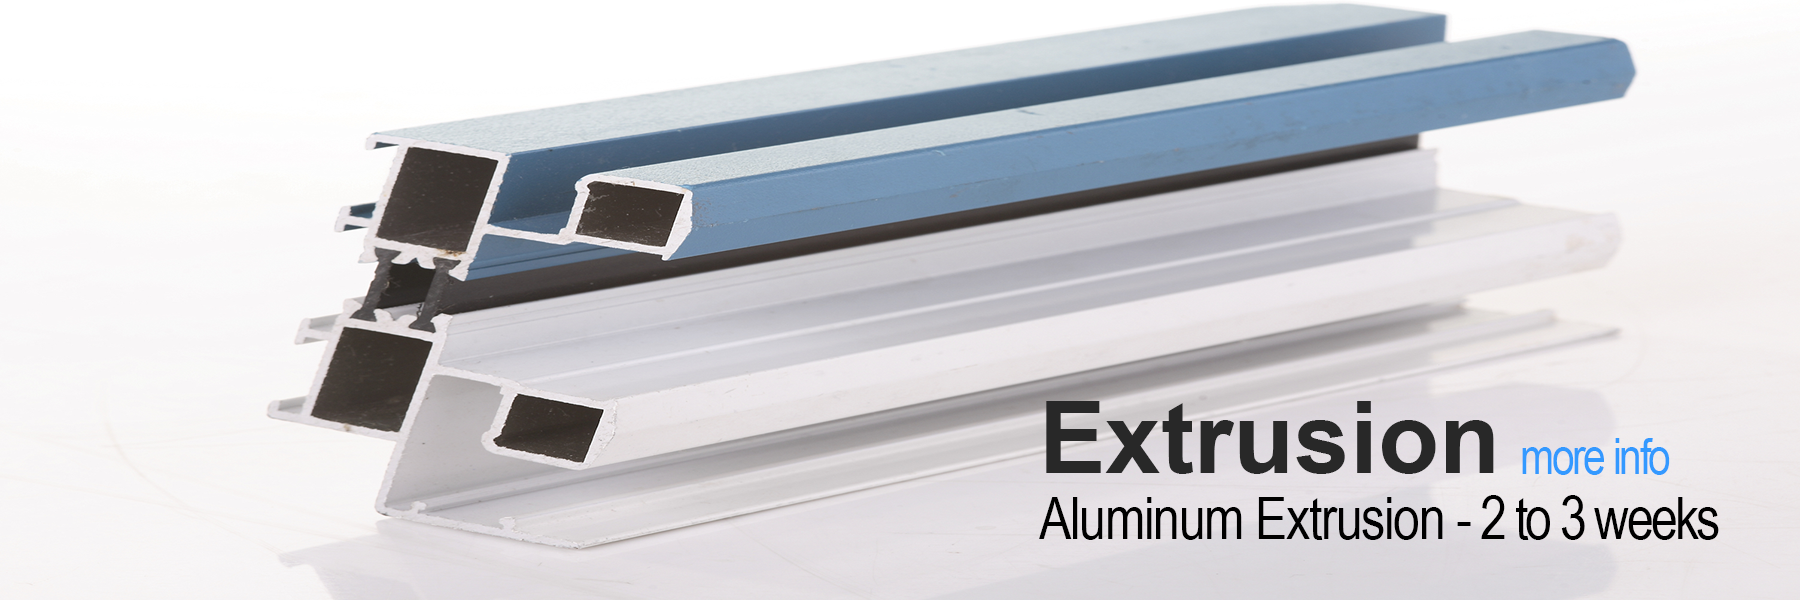 Rapid Prototype Extrusion - Aluminum